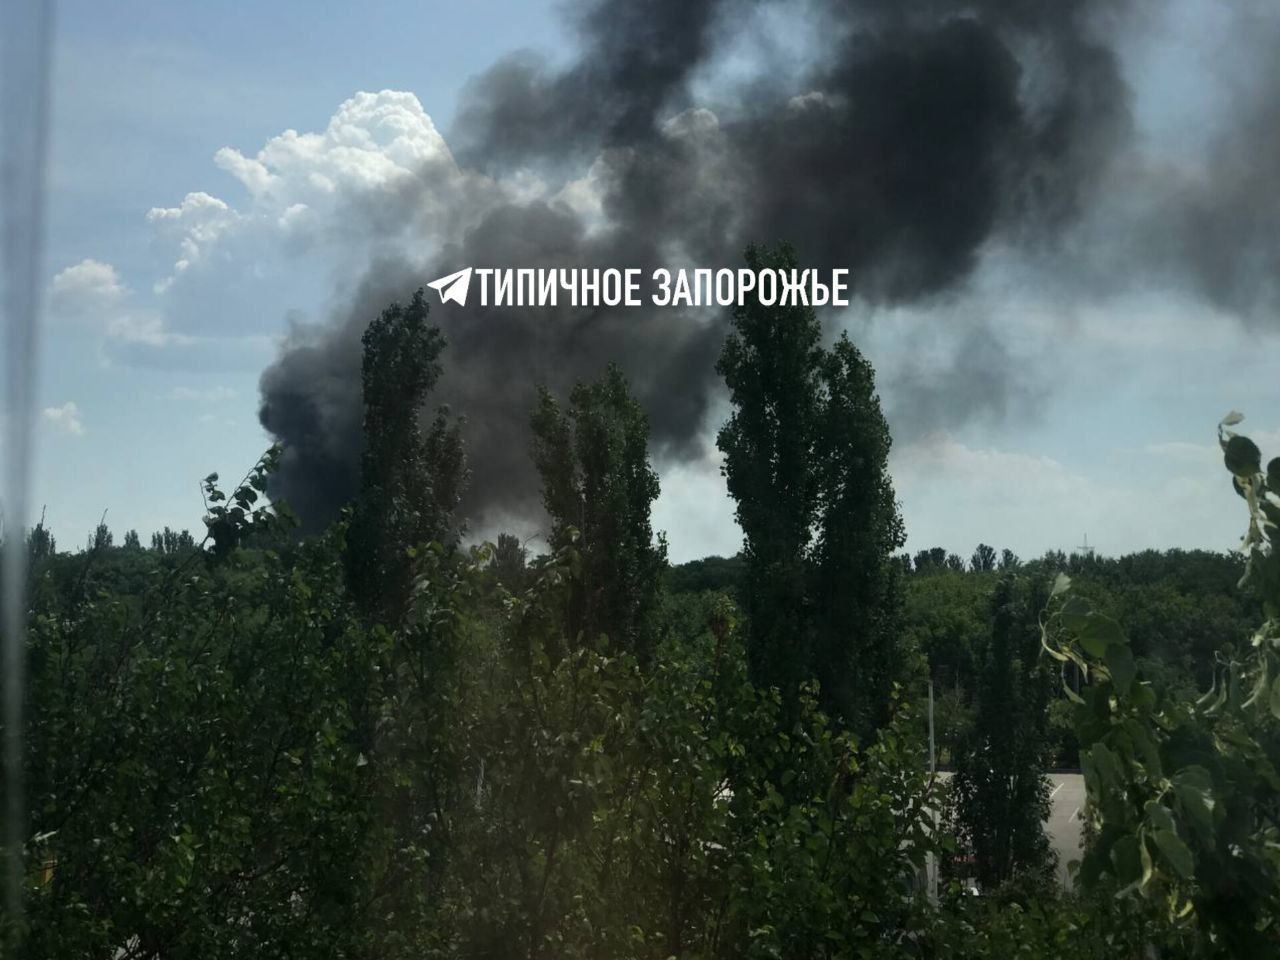 Еще кадры ракетного удара в Запорожье